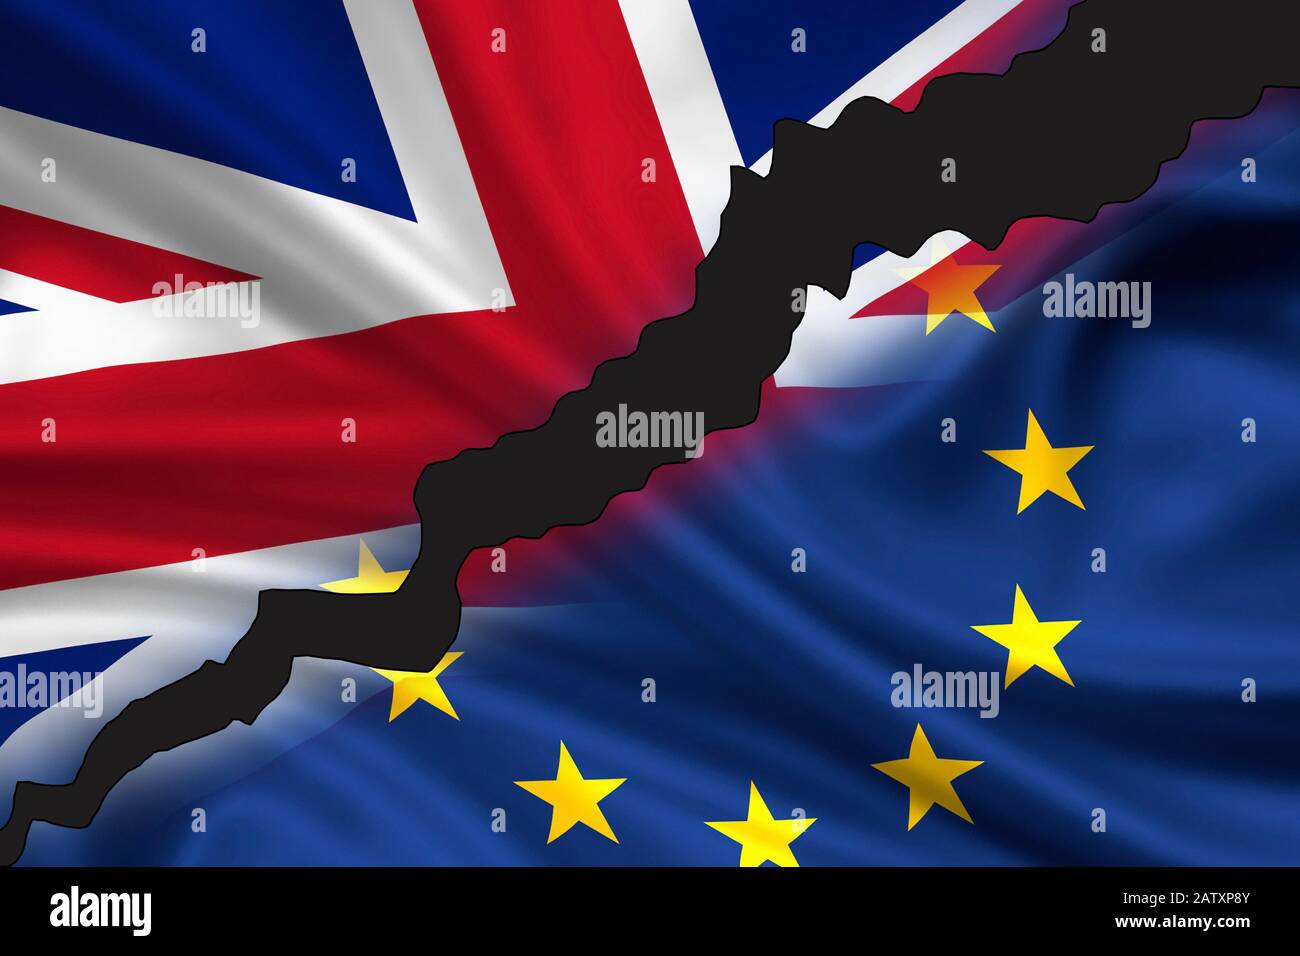 Londra, Regno Unito - 24 giugno 2016: Bandiera lusingata/divisa della Gran Bretagna (Union Jack) e dell'Europa che simboleggiano l'uscita del Regno Unito dall'Europa (Brexi Foto Stock